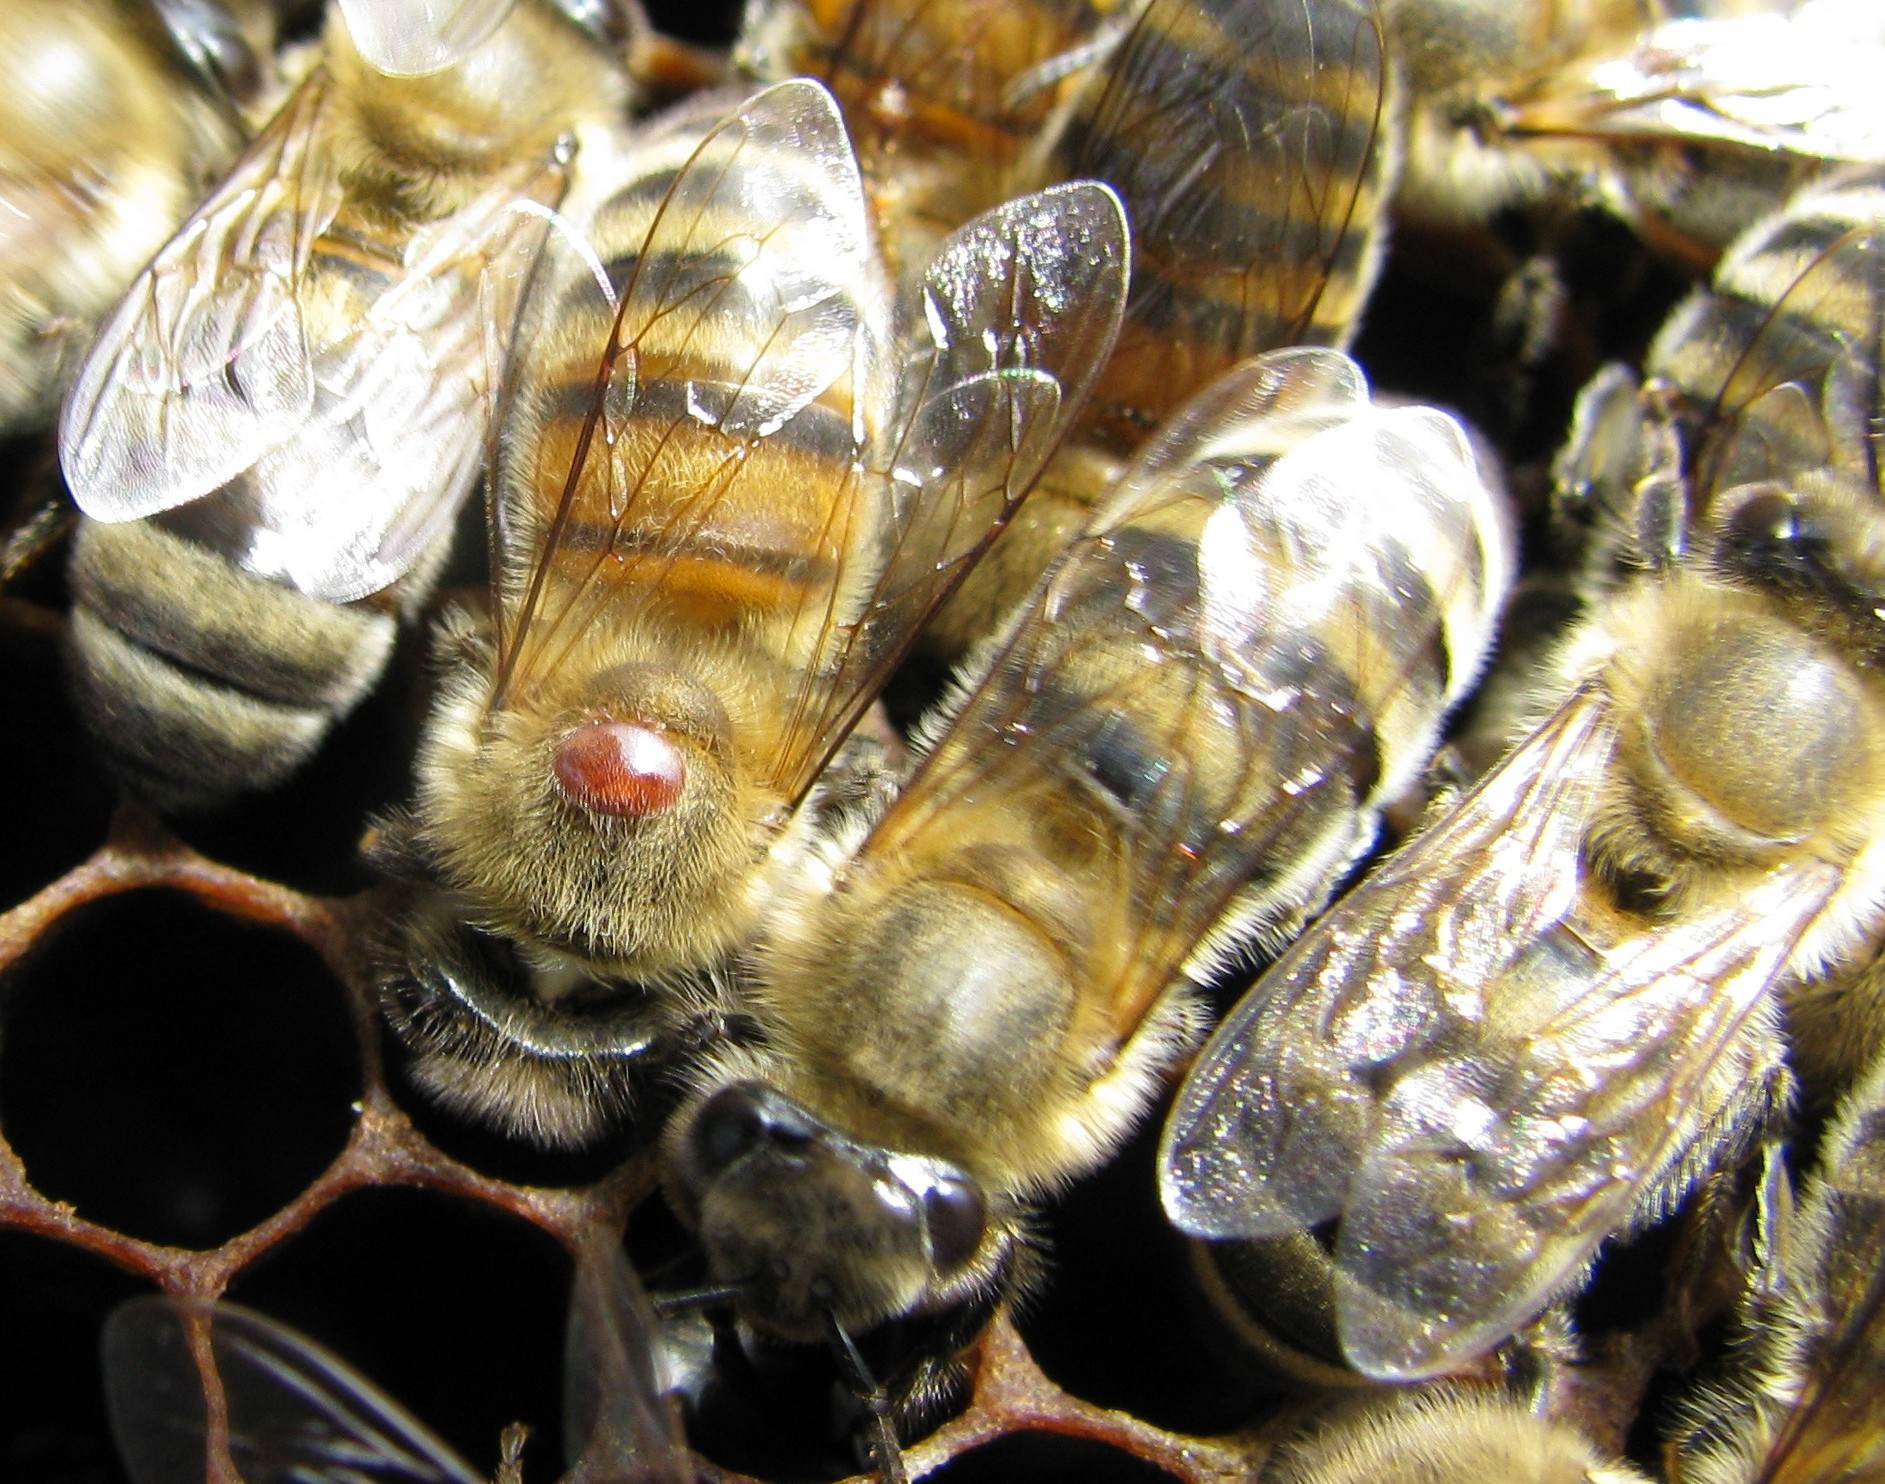 Образцы музея демонстрируют быструю эволюцию диких медоносных пчел, подвергшихся воздействию нового паразита.